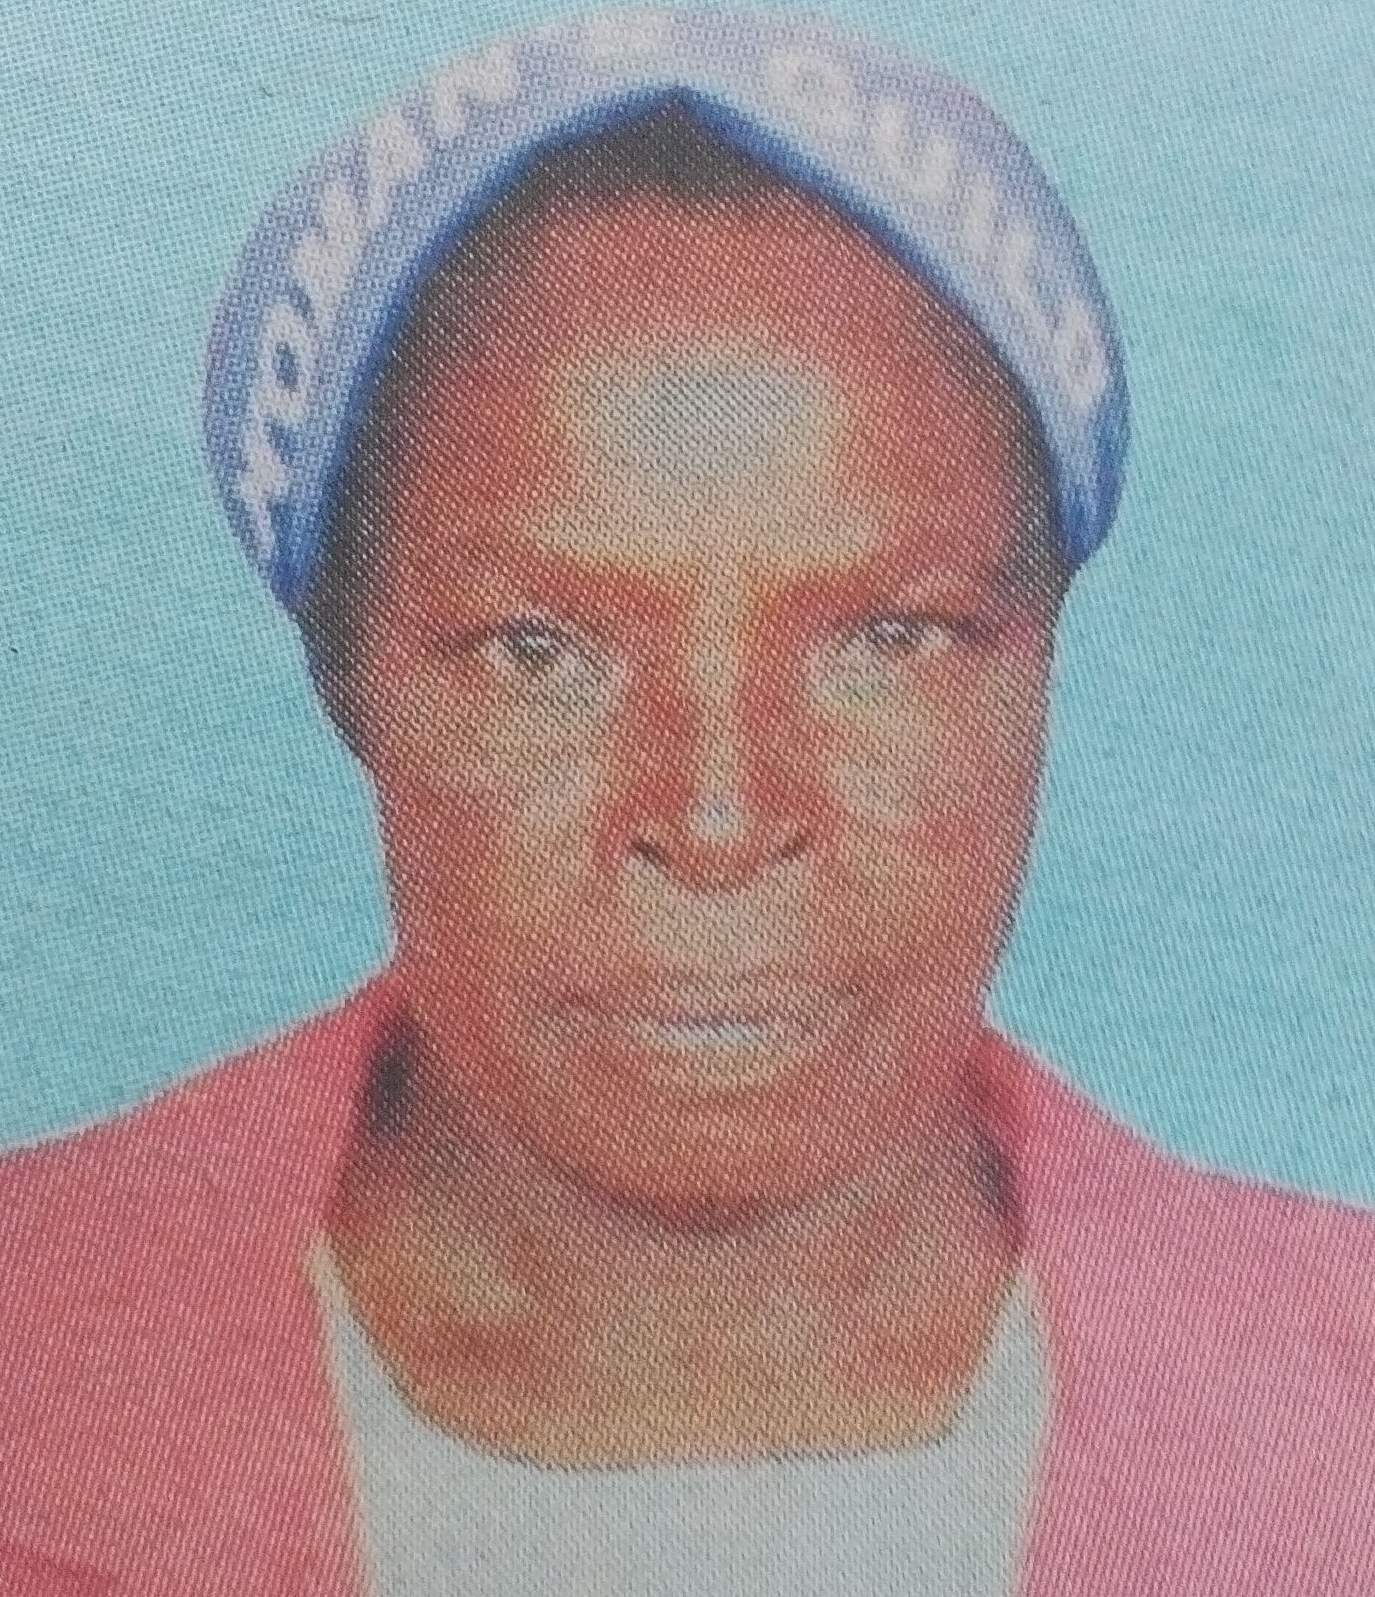 Obituary Image of Agnes Nyegera Kanyuancoobi (Maama)